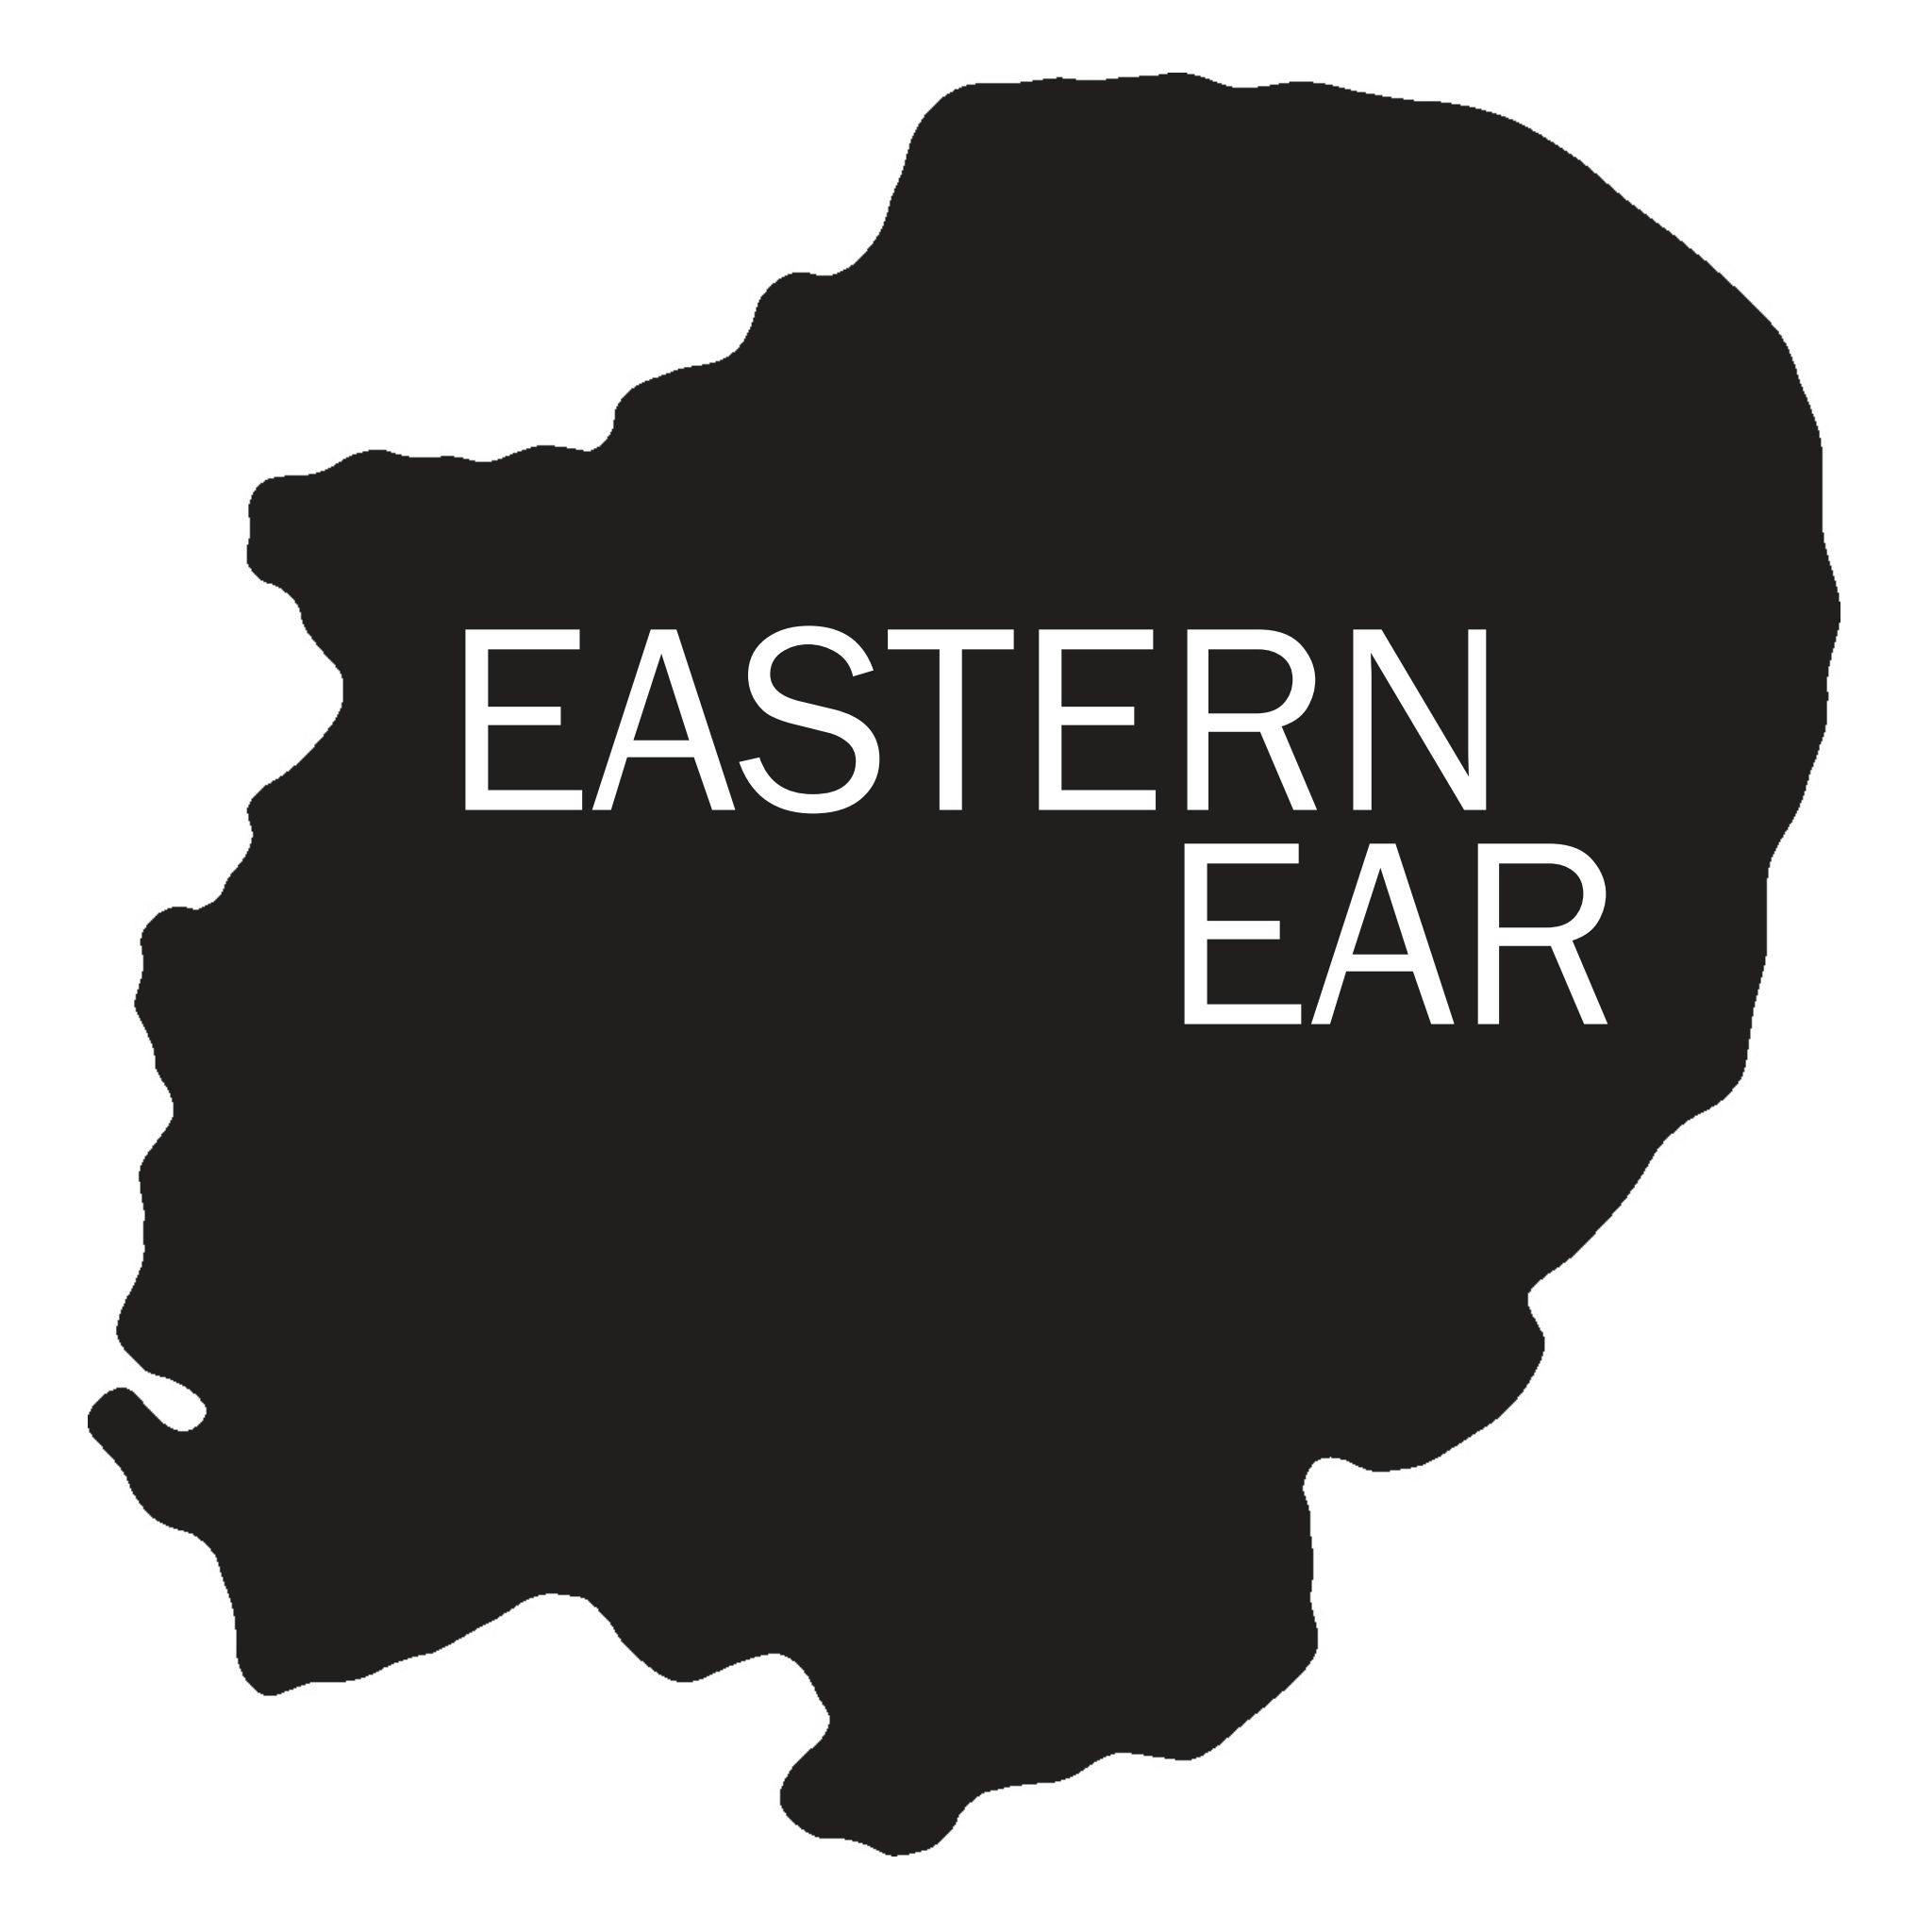 Eastern ear logo